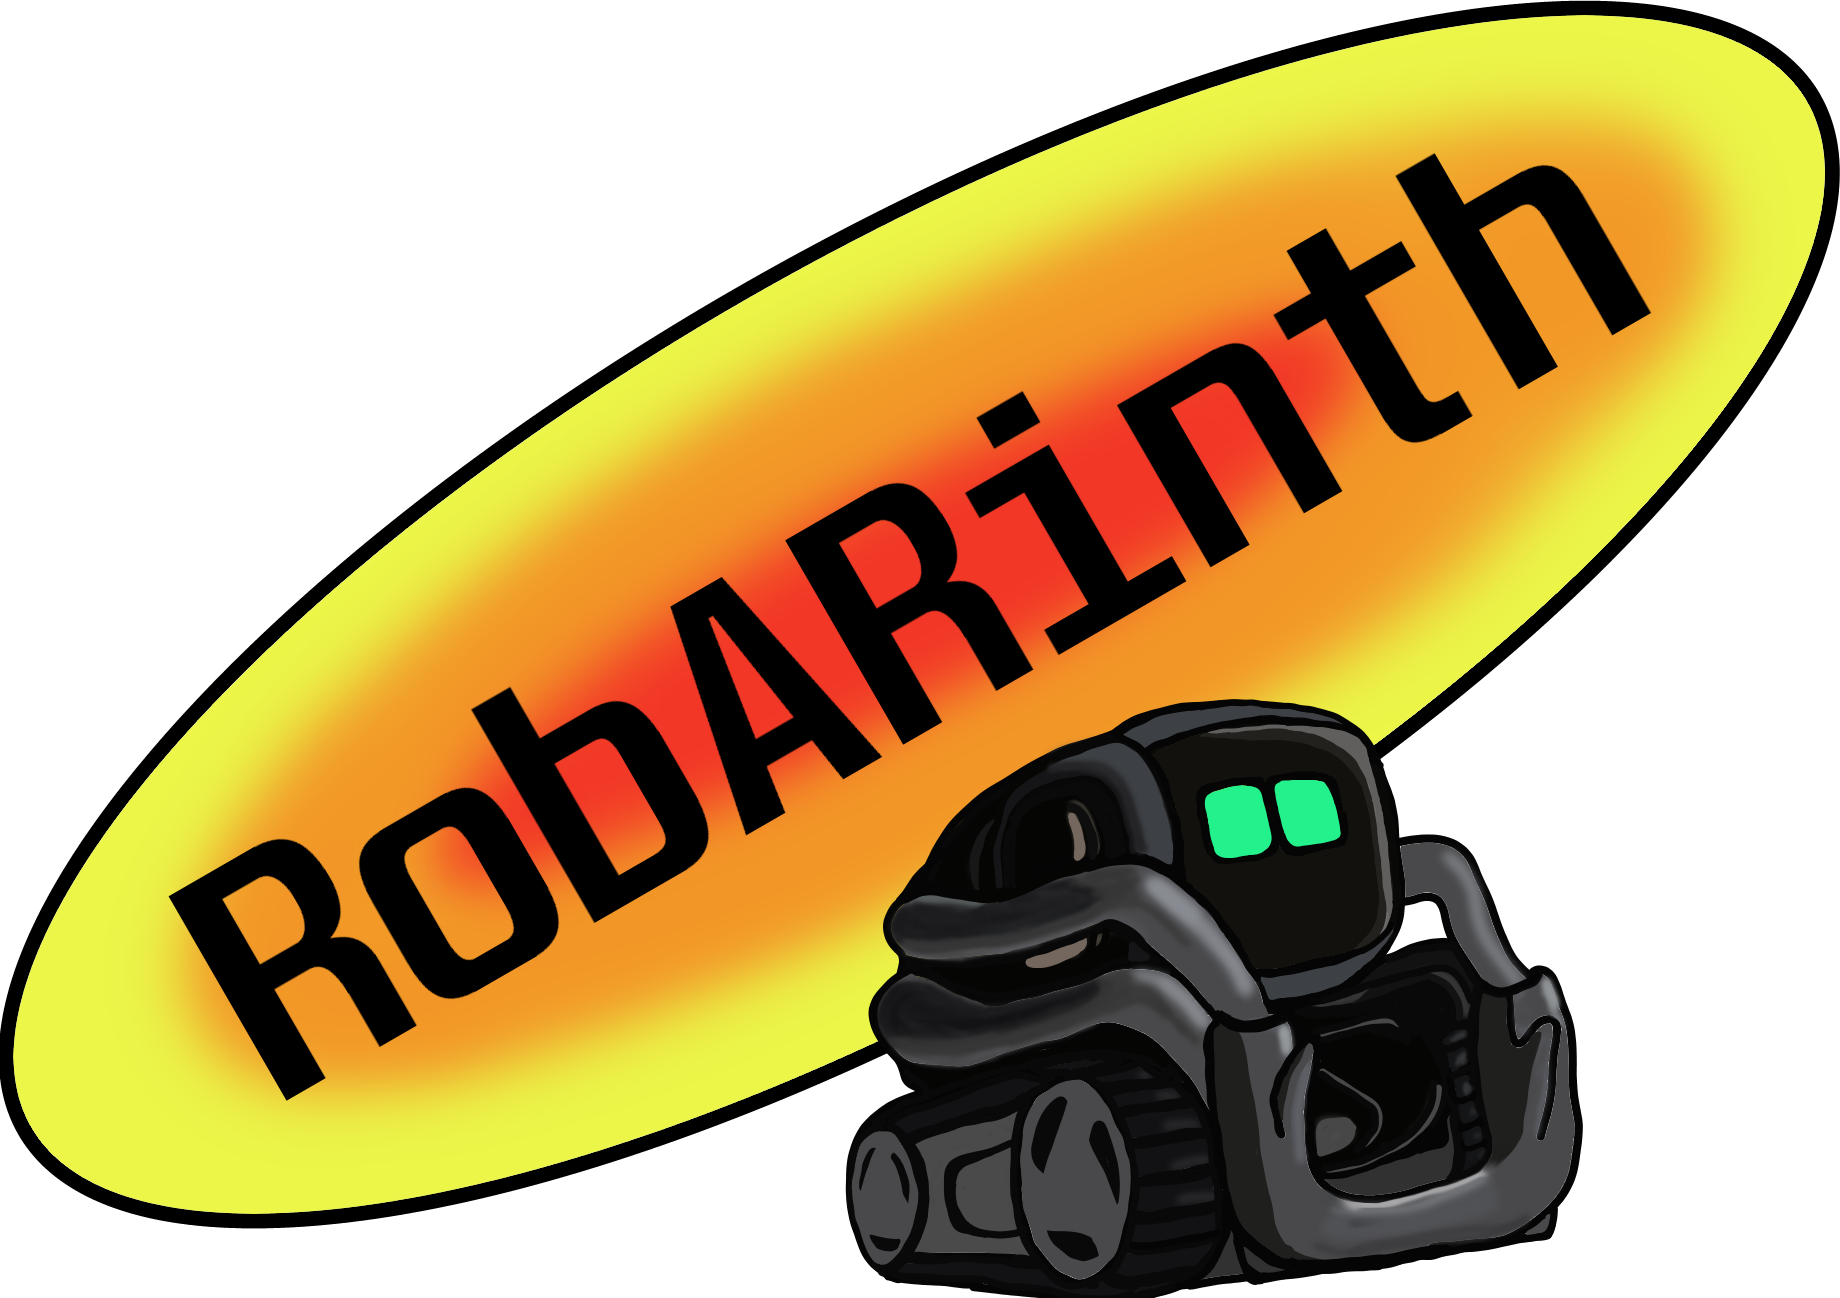 RobARinth logo